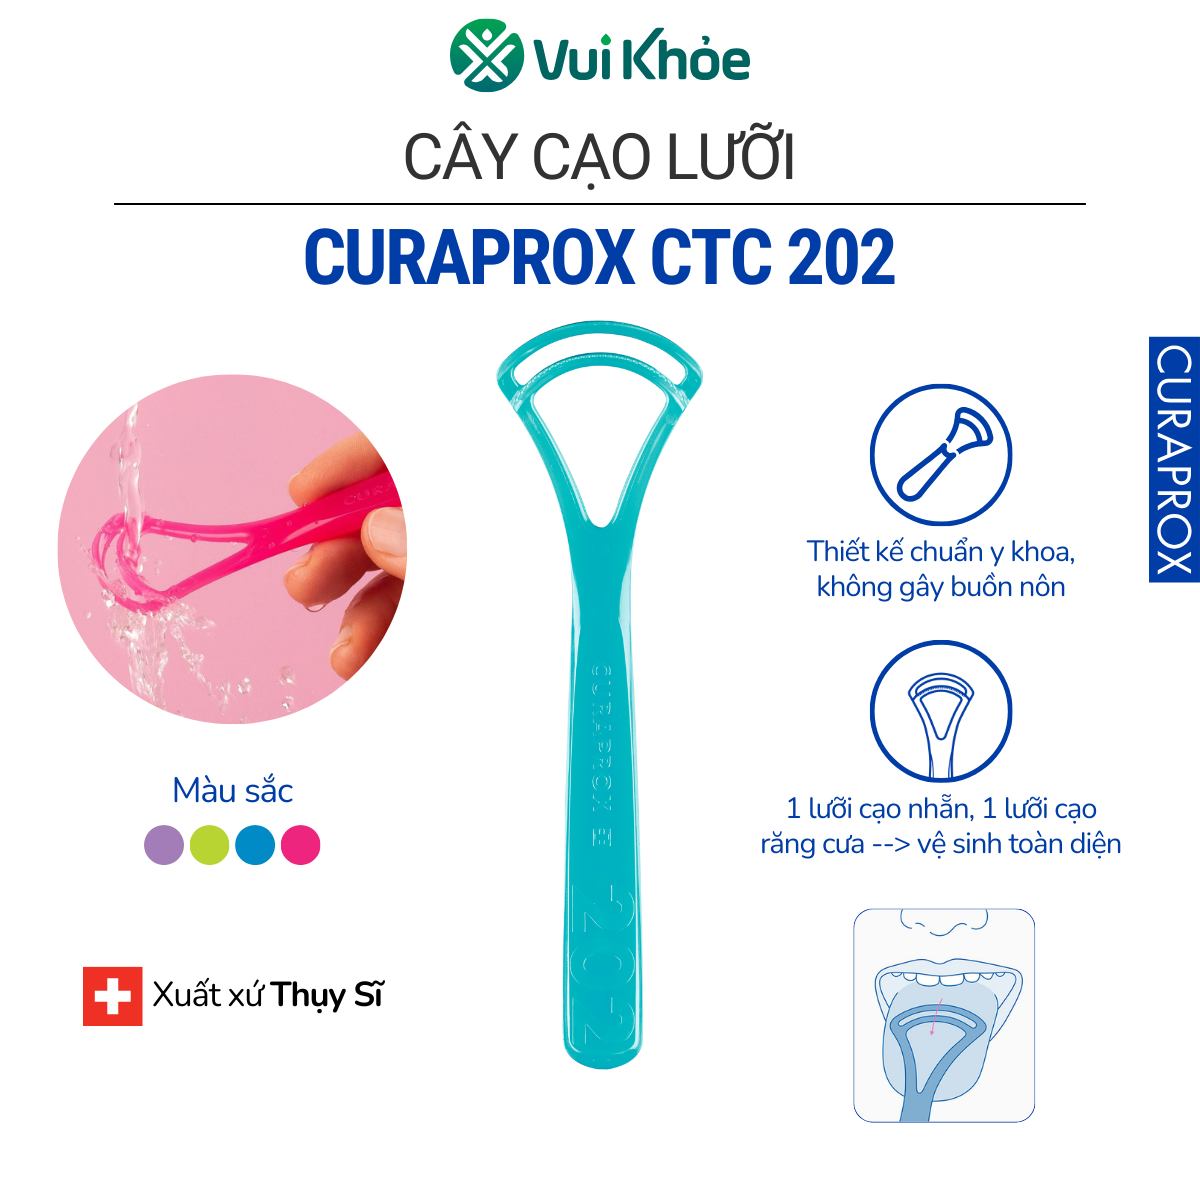 Cây cạo lưỡi Curaprox CTC 202 - Dụng cụ vệ sinh lưỡi 2 đầu cạo đến từ Thụy Sỹ